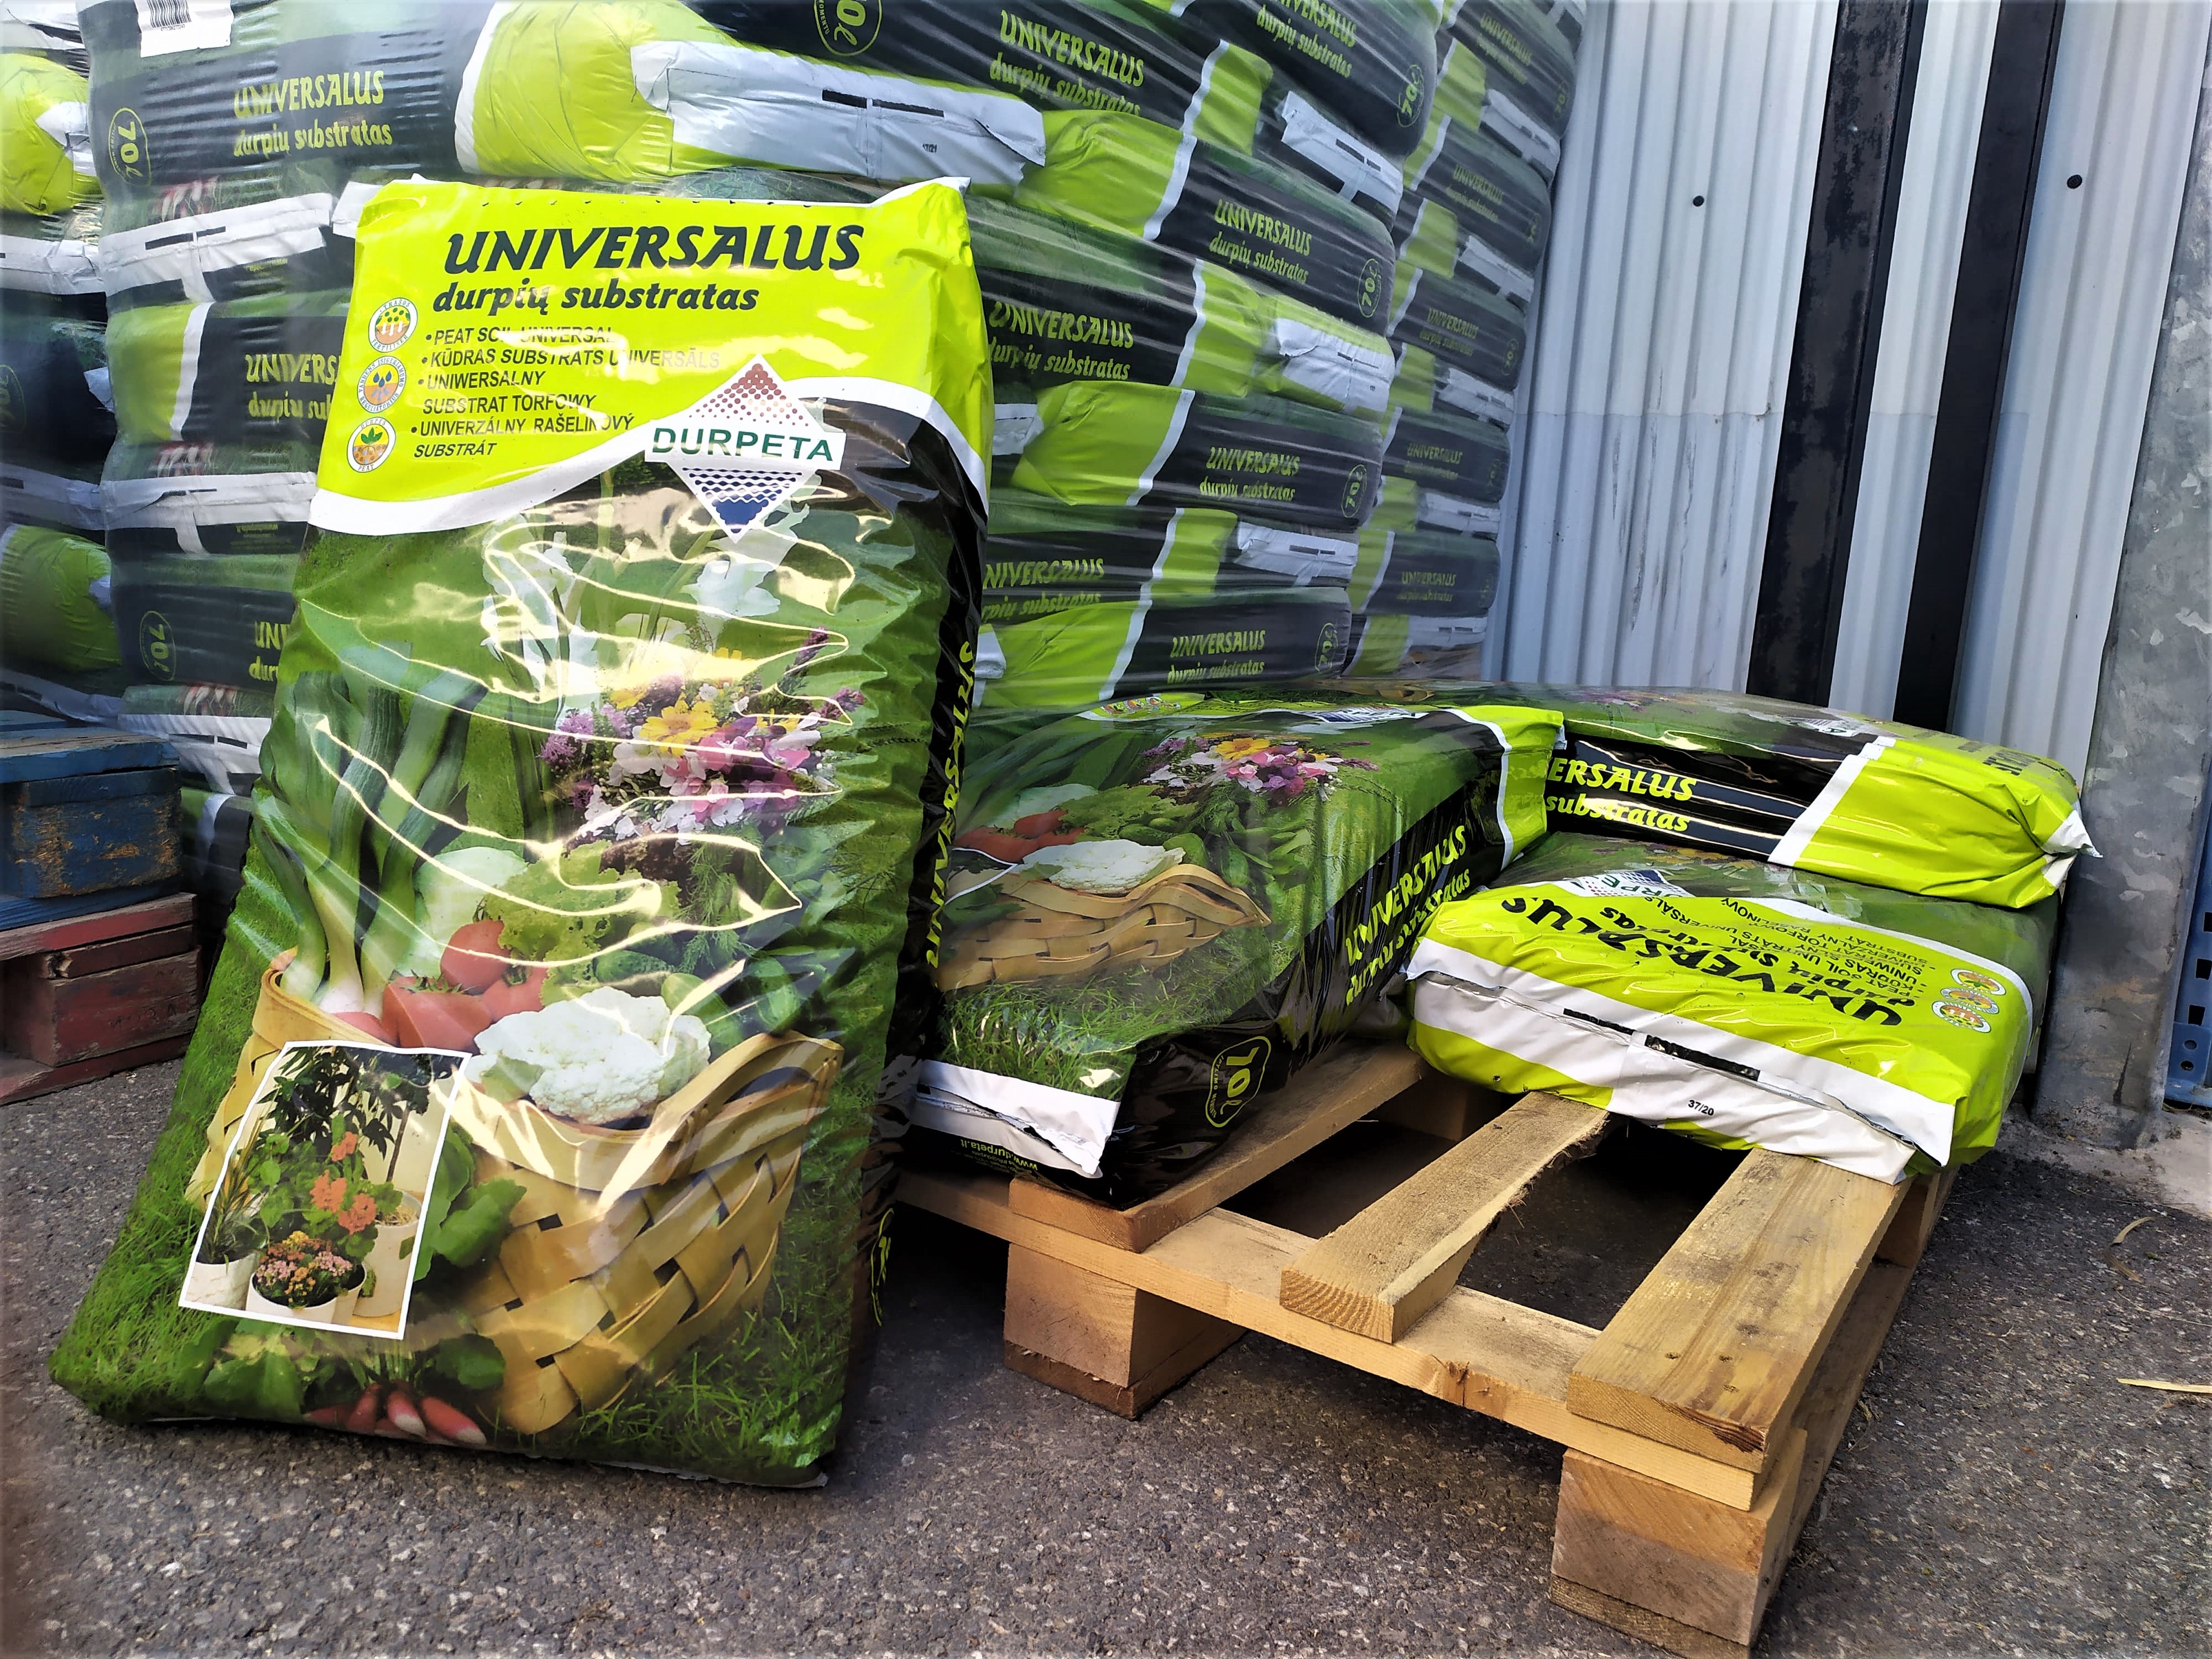 compra sustrato universal online para hortalizas y otras plantas